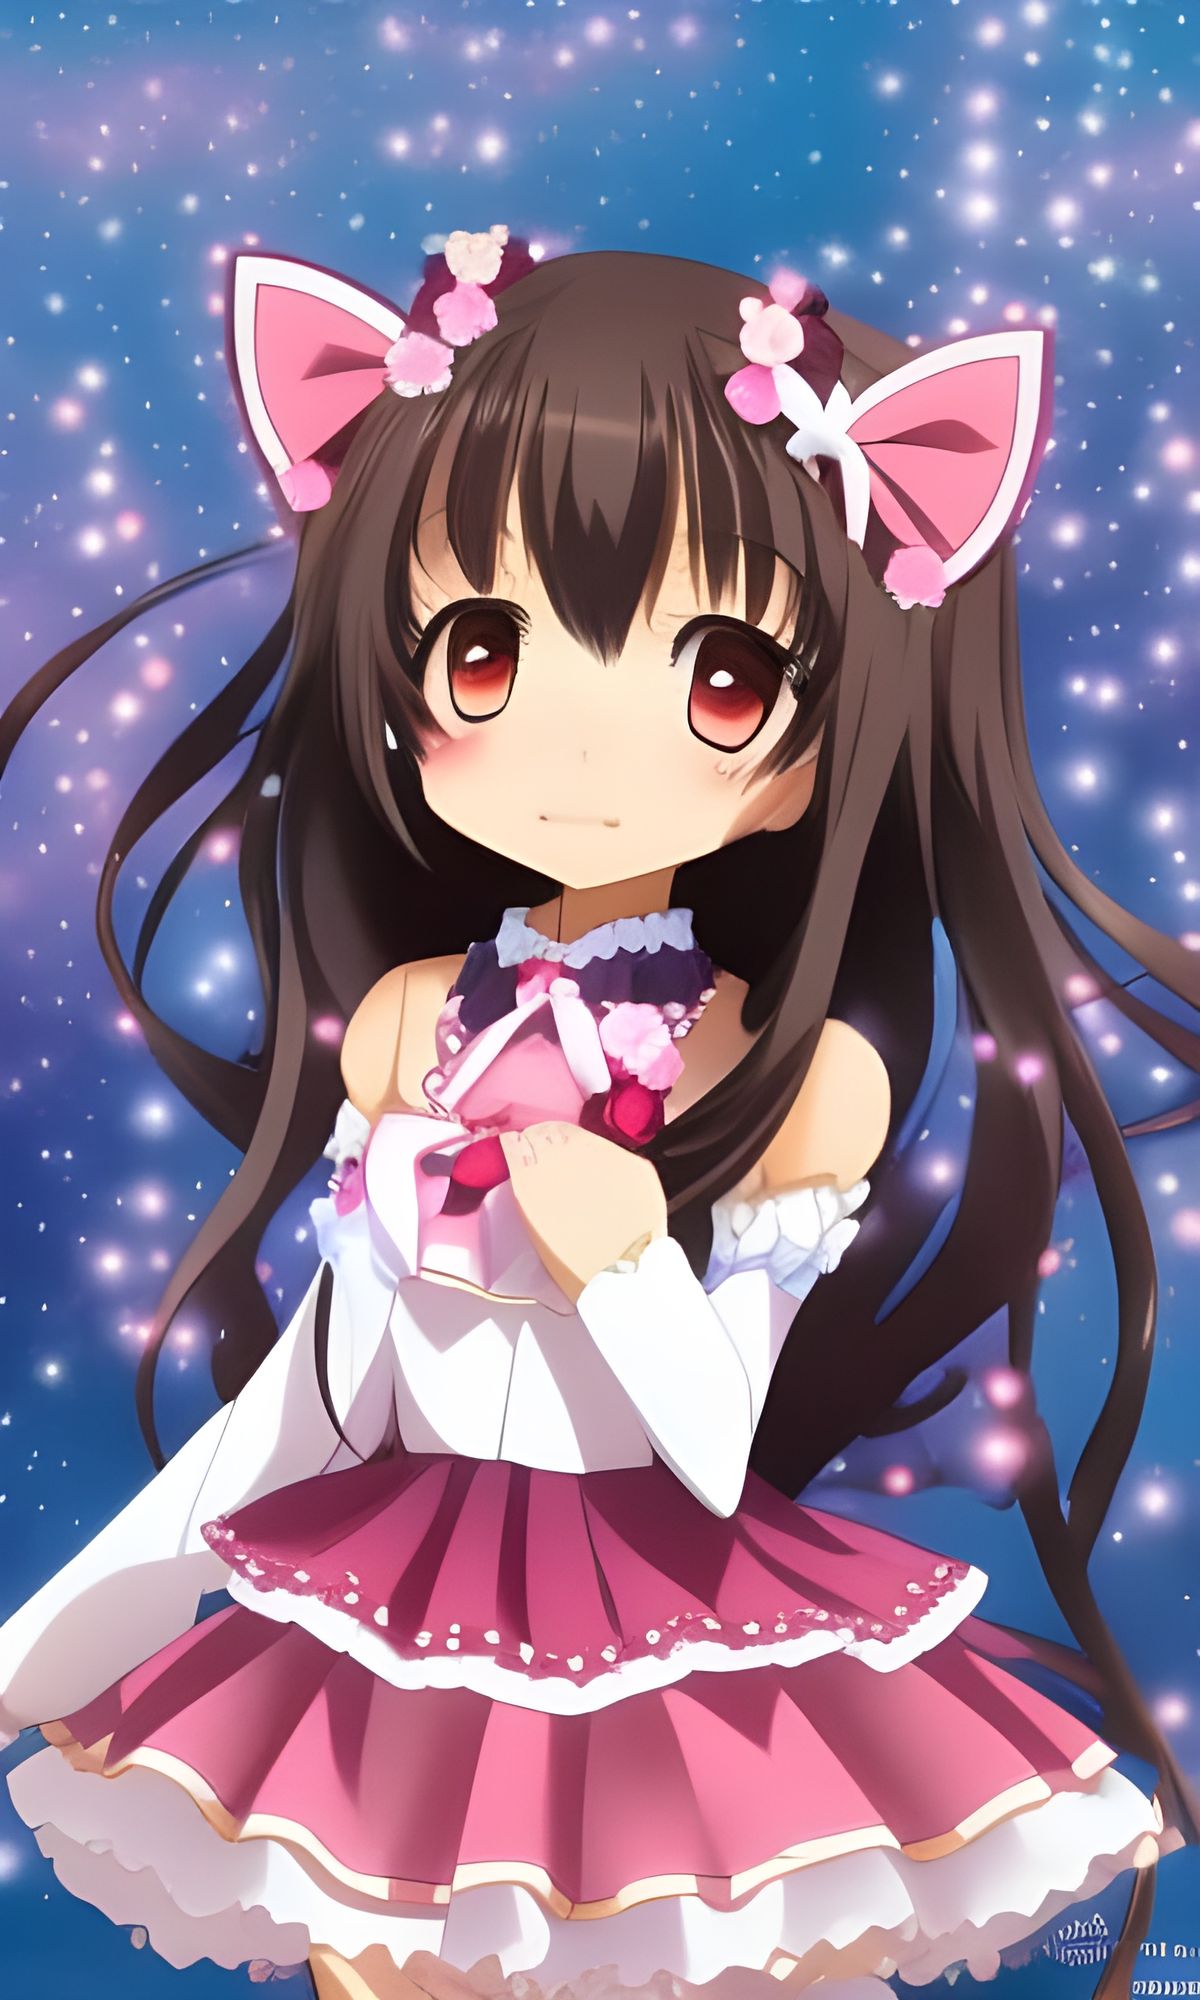 Anime Girl Cartoon Character Japanese Girl Stock Illustration 1663025698   Shutterstock